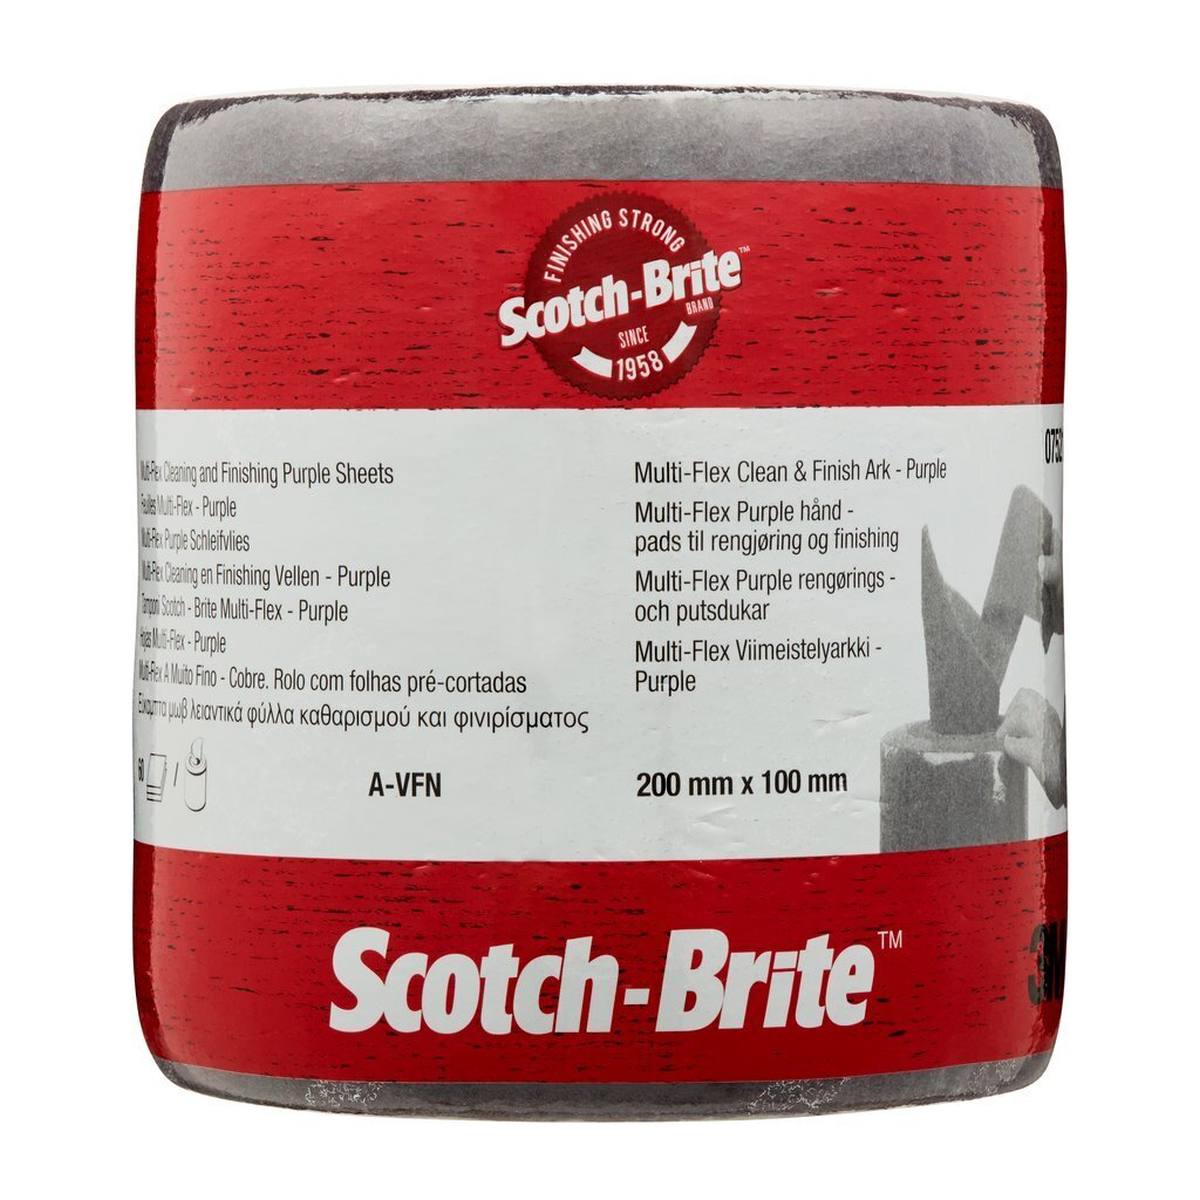 3M Scotch-Brite Multi-Flex rotolo in tessuto non tessuto MX-SR, viola, 100 mm x 200 mm, A, molto fine, 60 pieghe perforate #07521